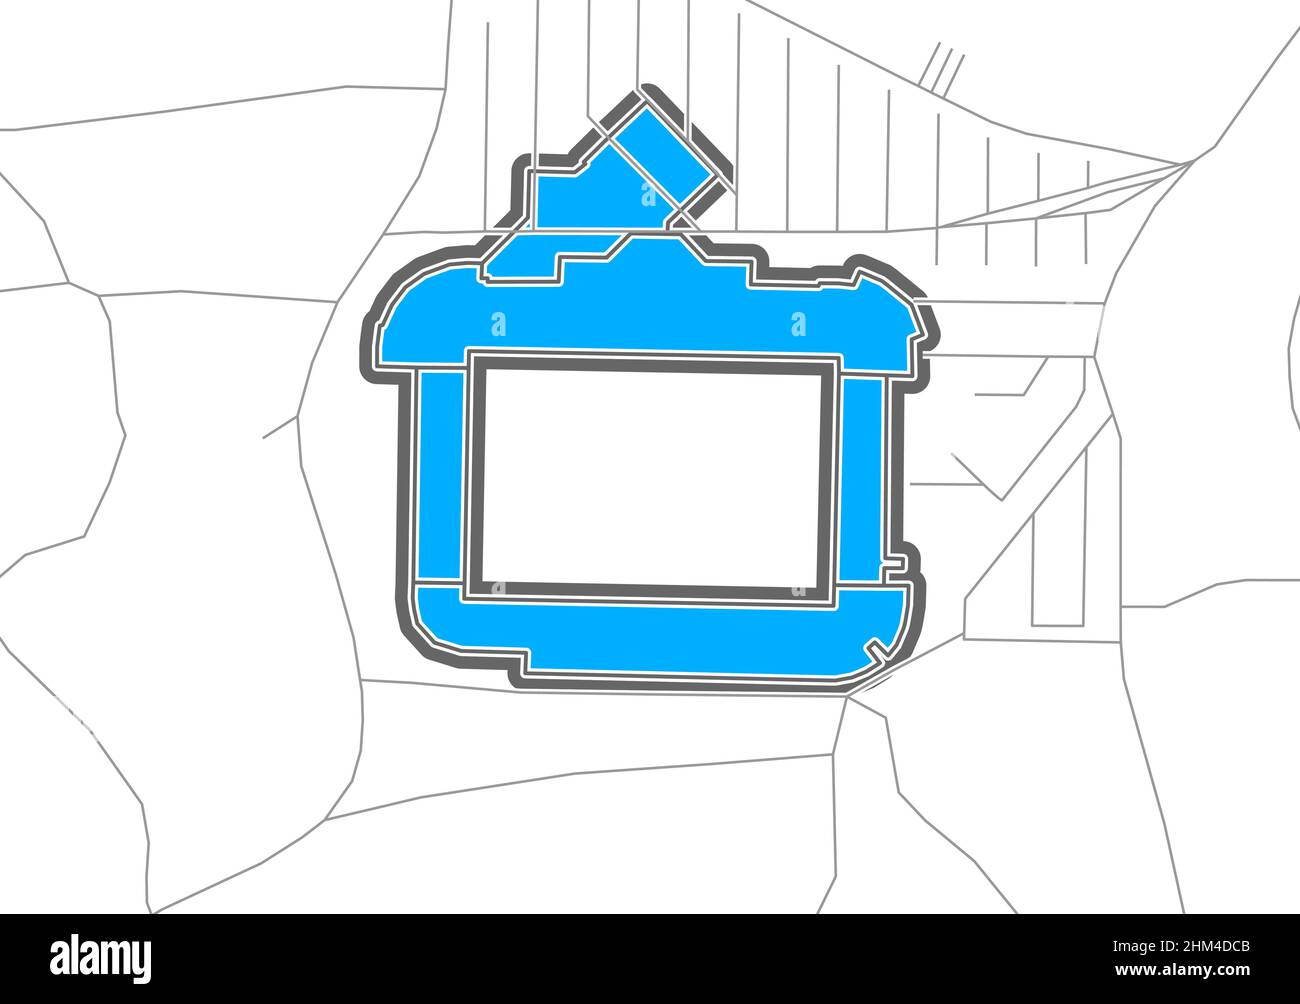 Heidenheim, Stadio di Calcio, mappa vettoriale. La mappa della bundesliga Statium è stata disegnata con aree bianche e linee per le strade principali, strade laterali. Illustrazione Vettoriale